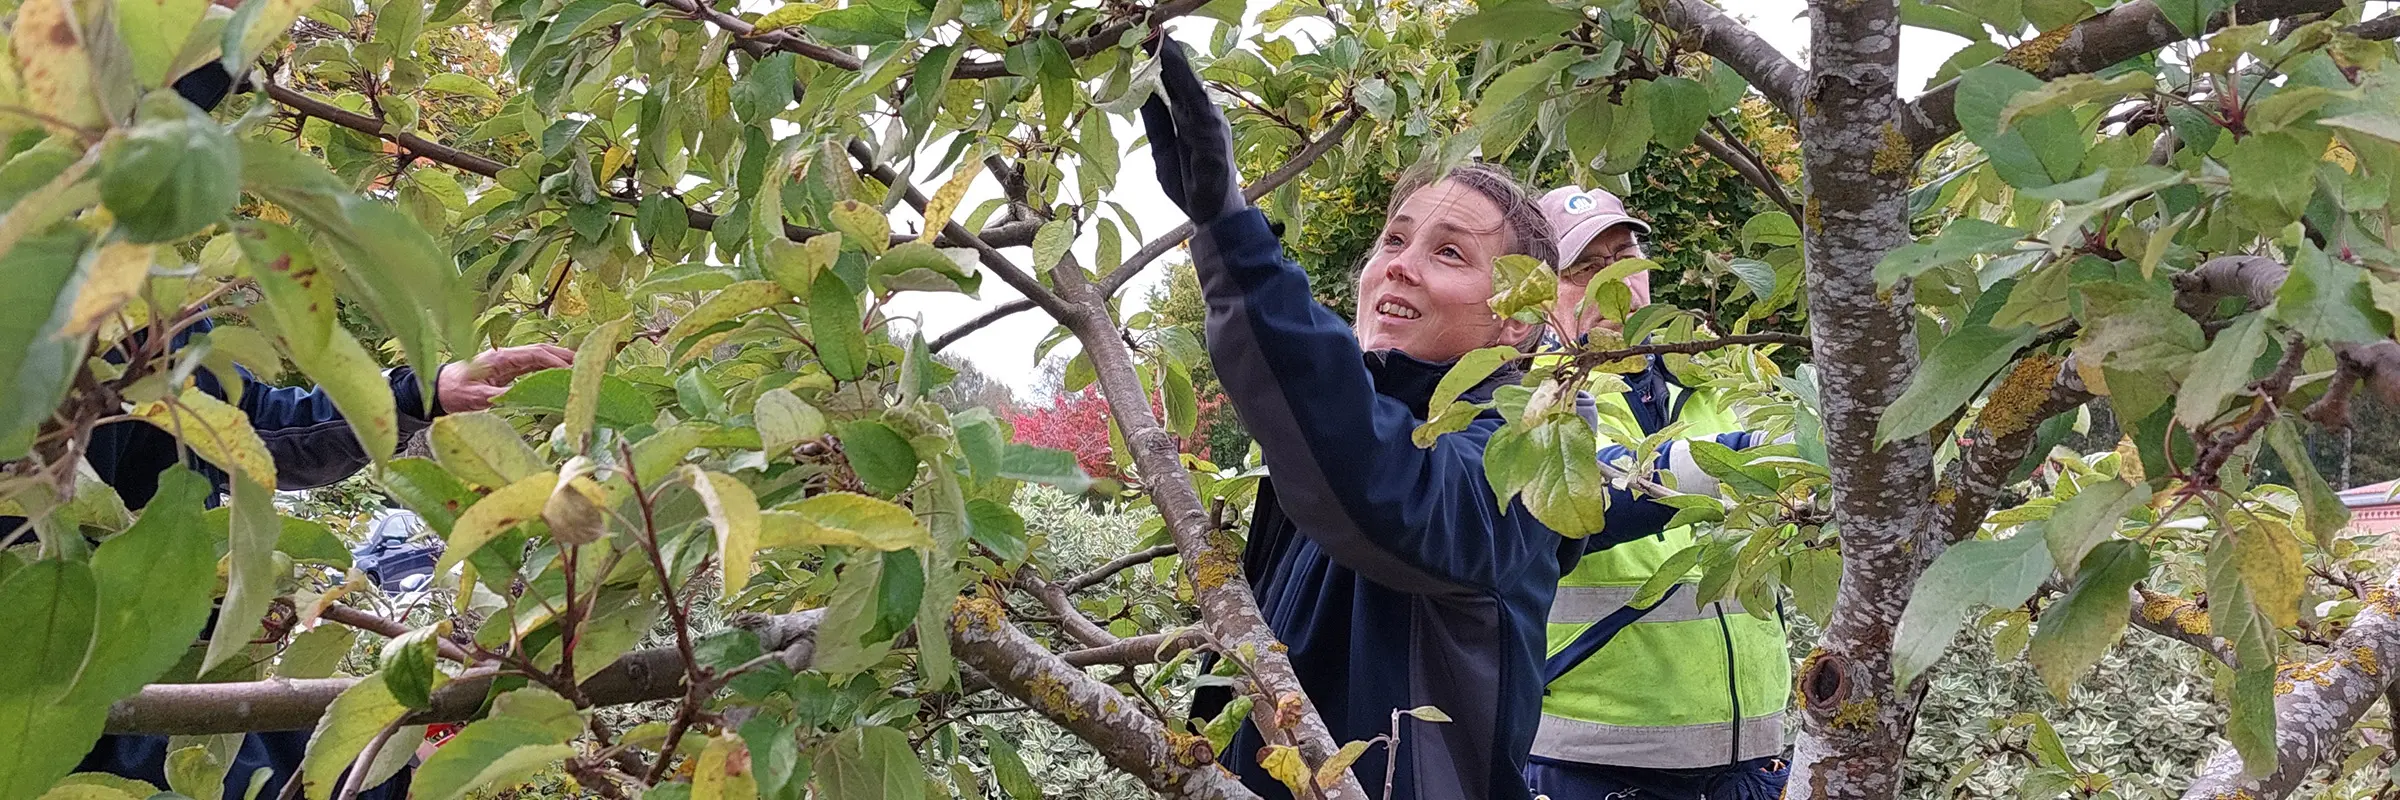 Fastighetsskötare från ABK står i bakom grenar och inspekterar ett träd under en trädbeskärningsutbildning